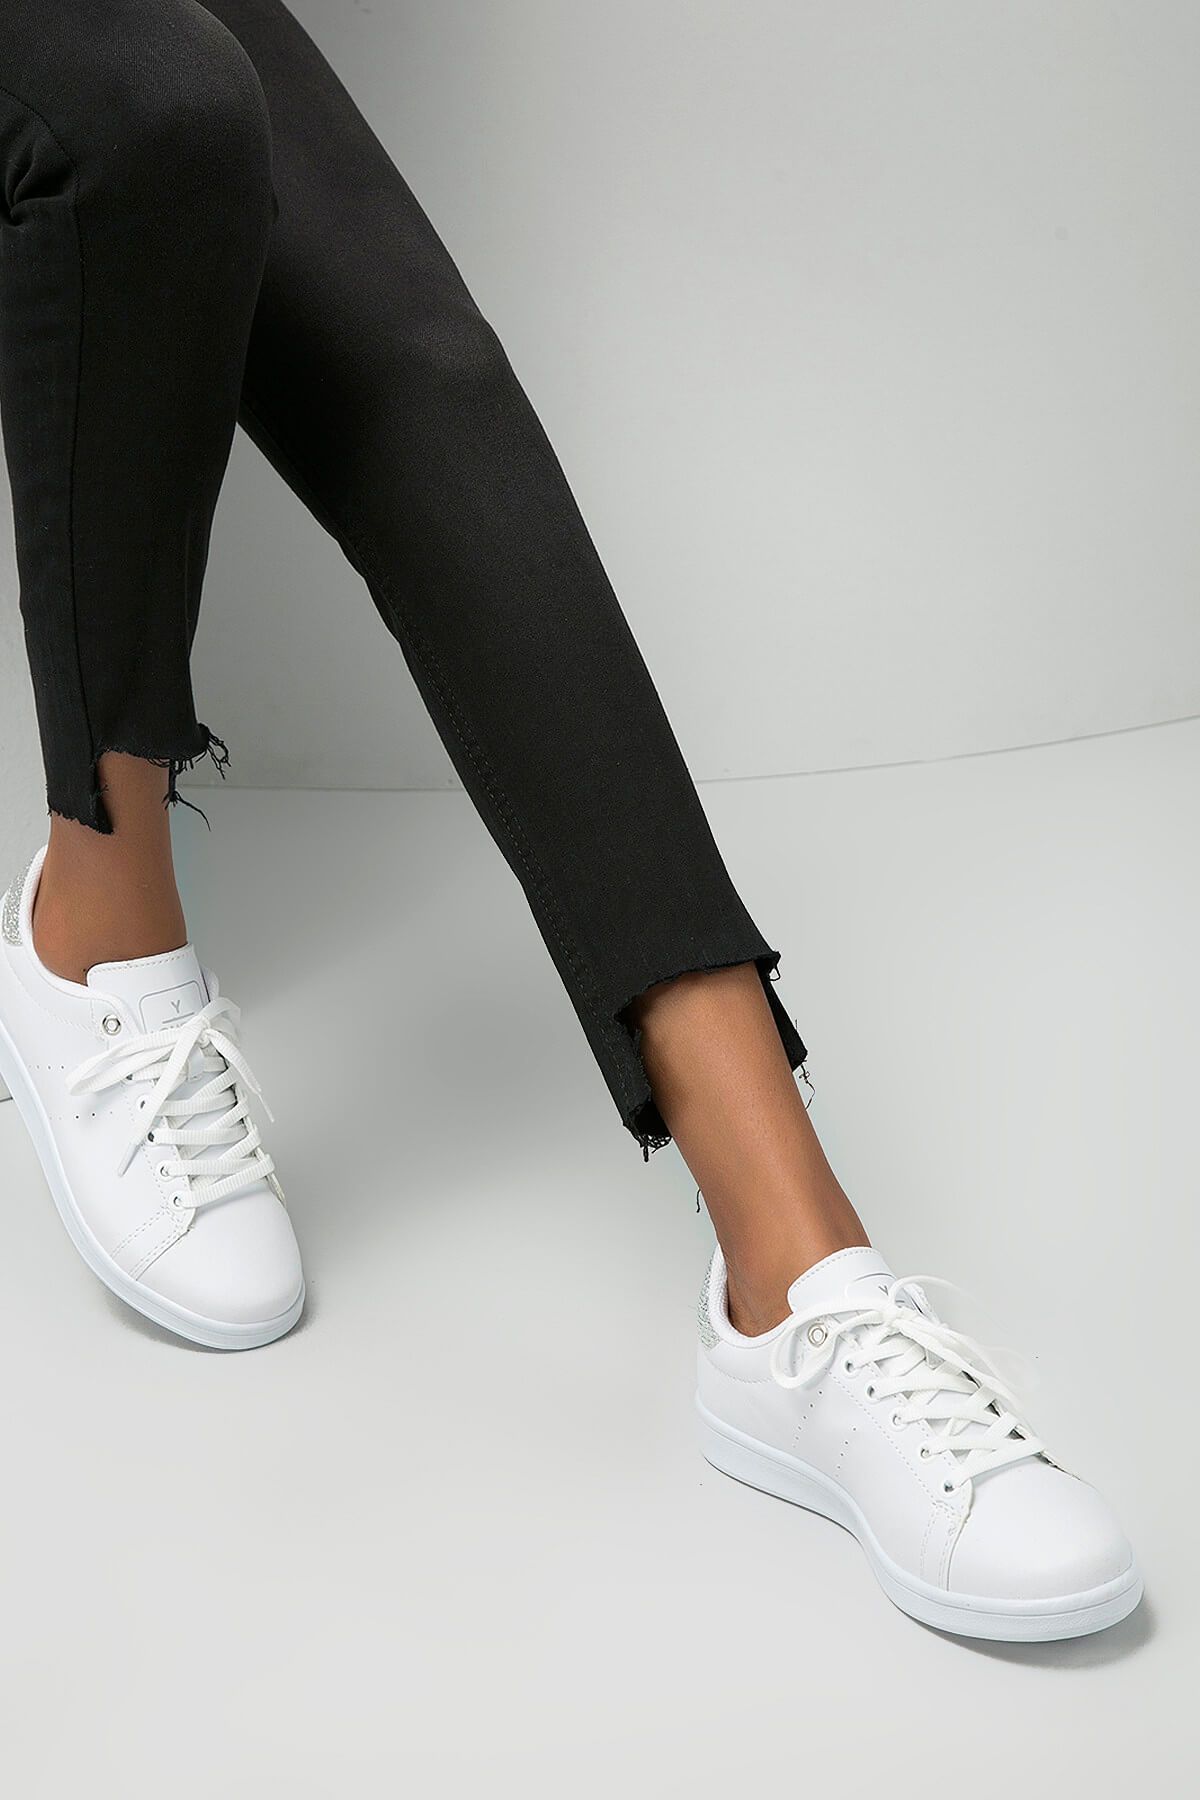 Y-London Beyaz Gümüş Kadın Spor Ayakkabı 669-8-8600